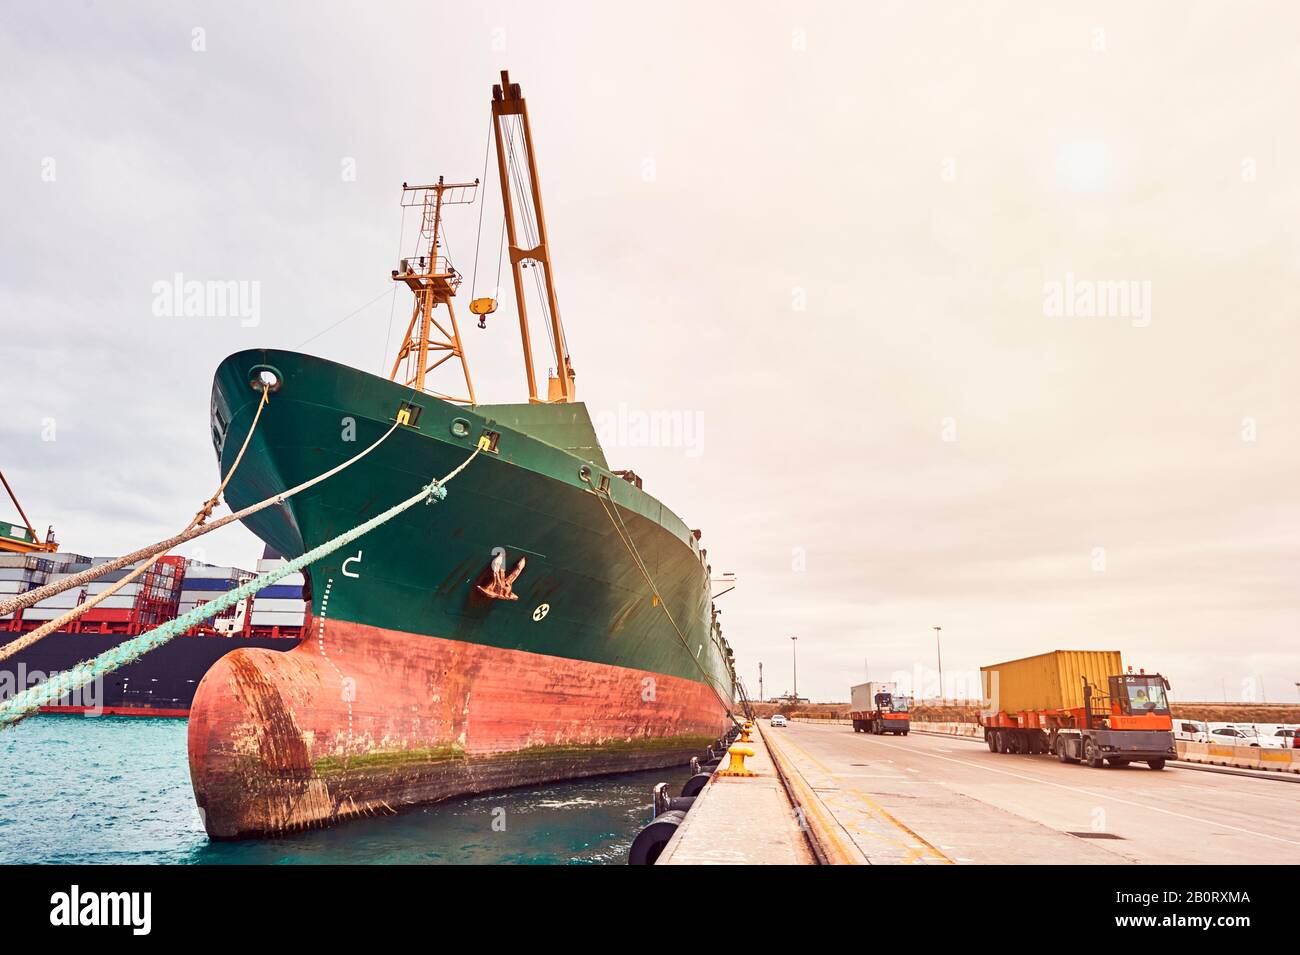 Container-Frachtschiff und Container-Lkw im Maritim-Hafen. Transportindustrie und Versandlogistik. Export und Import von Geschäften. Stockfoto